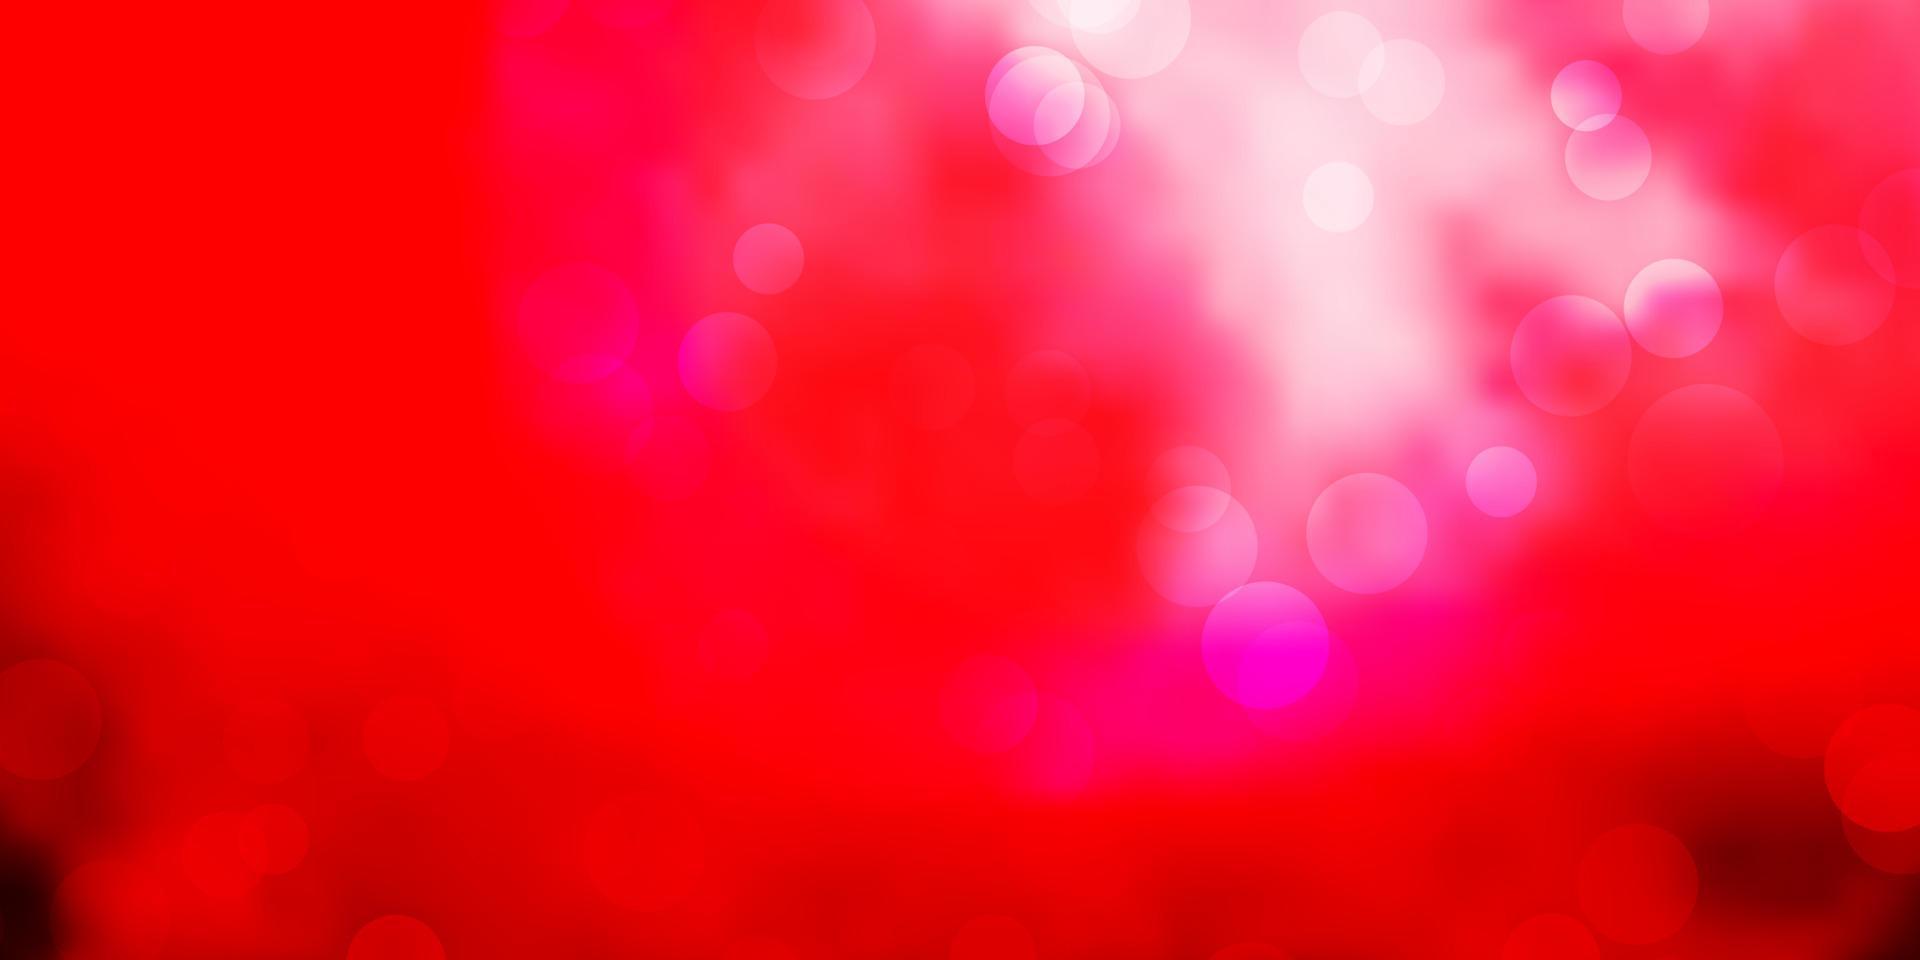 fond de vecteur rose clair, rouge avec des bulles.